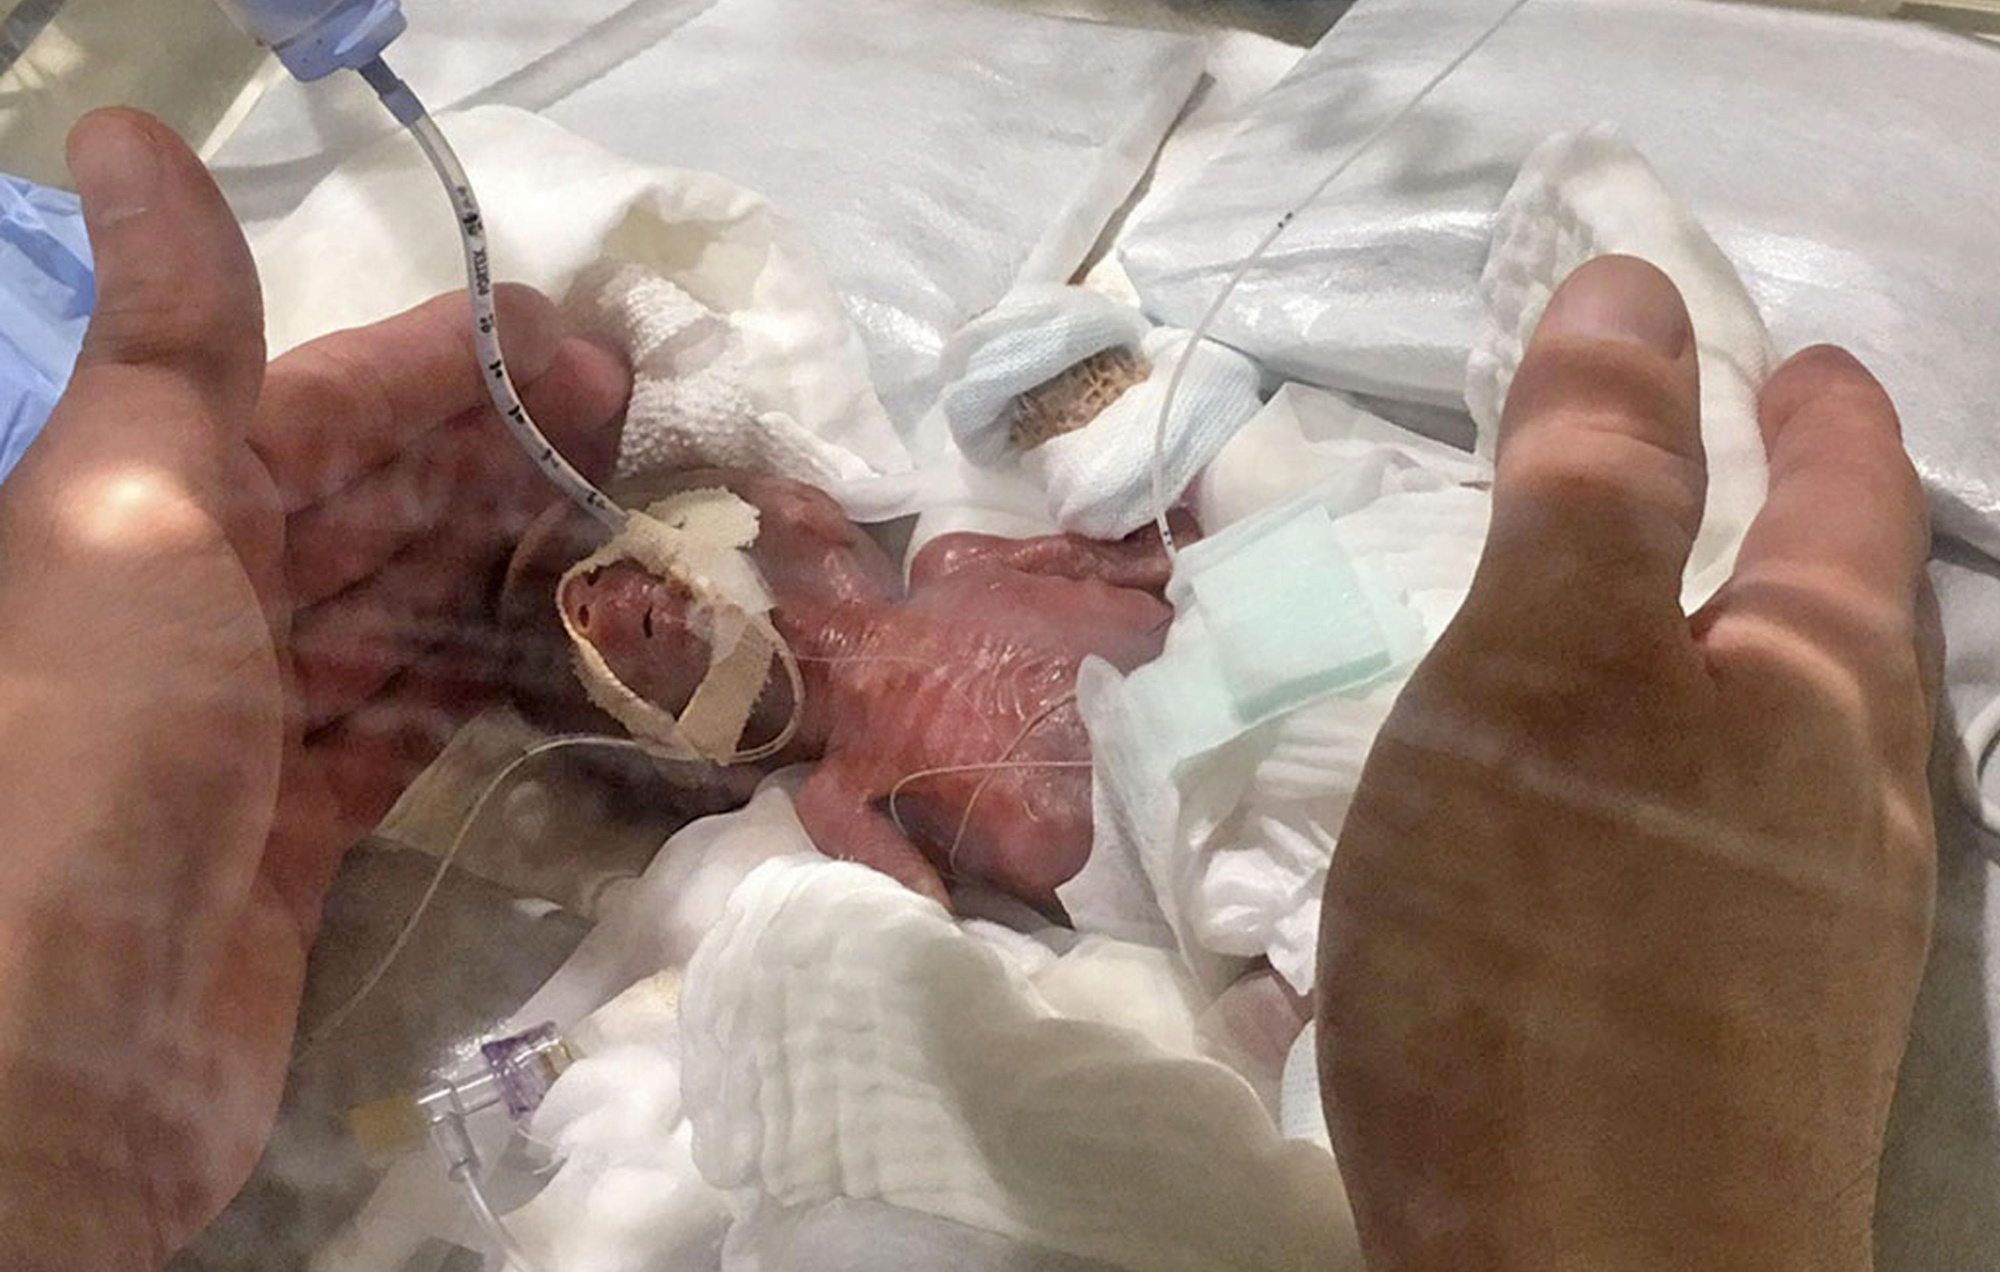 Τα κατάφερε! Το μικρότερο νεογέννητο αγόρι στον κόσμο γεννήθηκε μόλις 268 γραμμάρια και θα ζήσει τη ζωή του